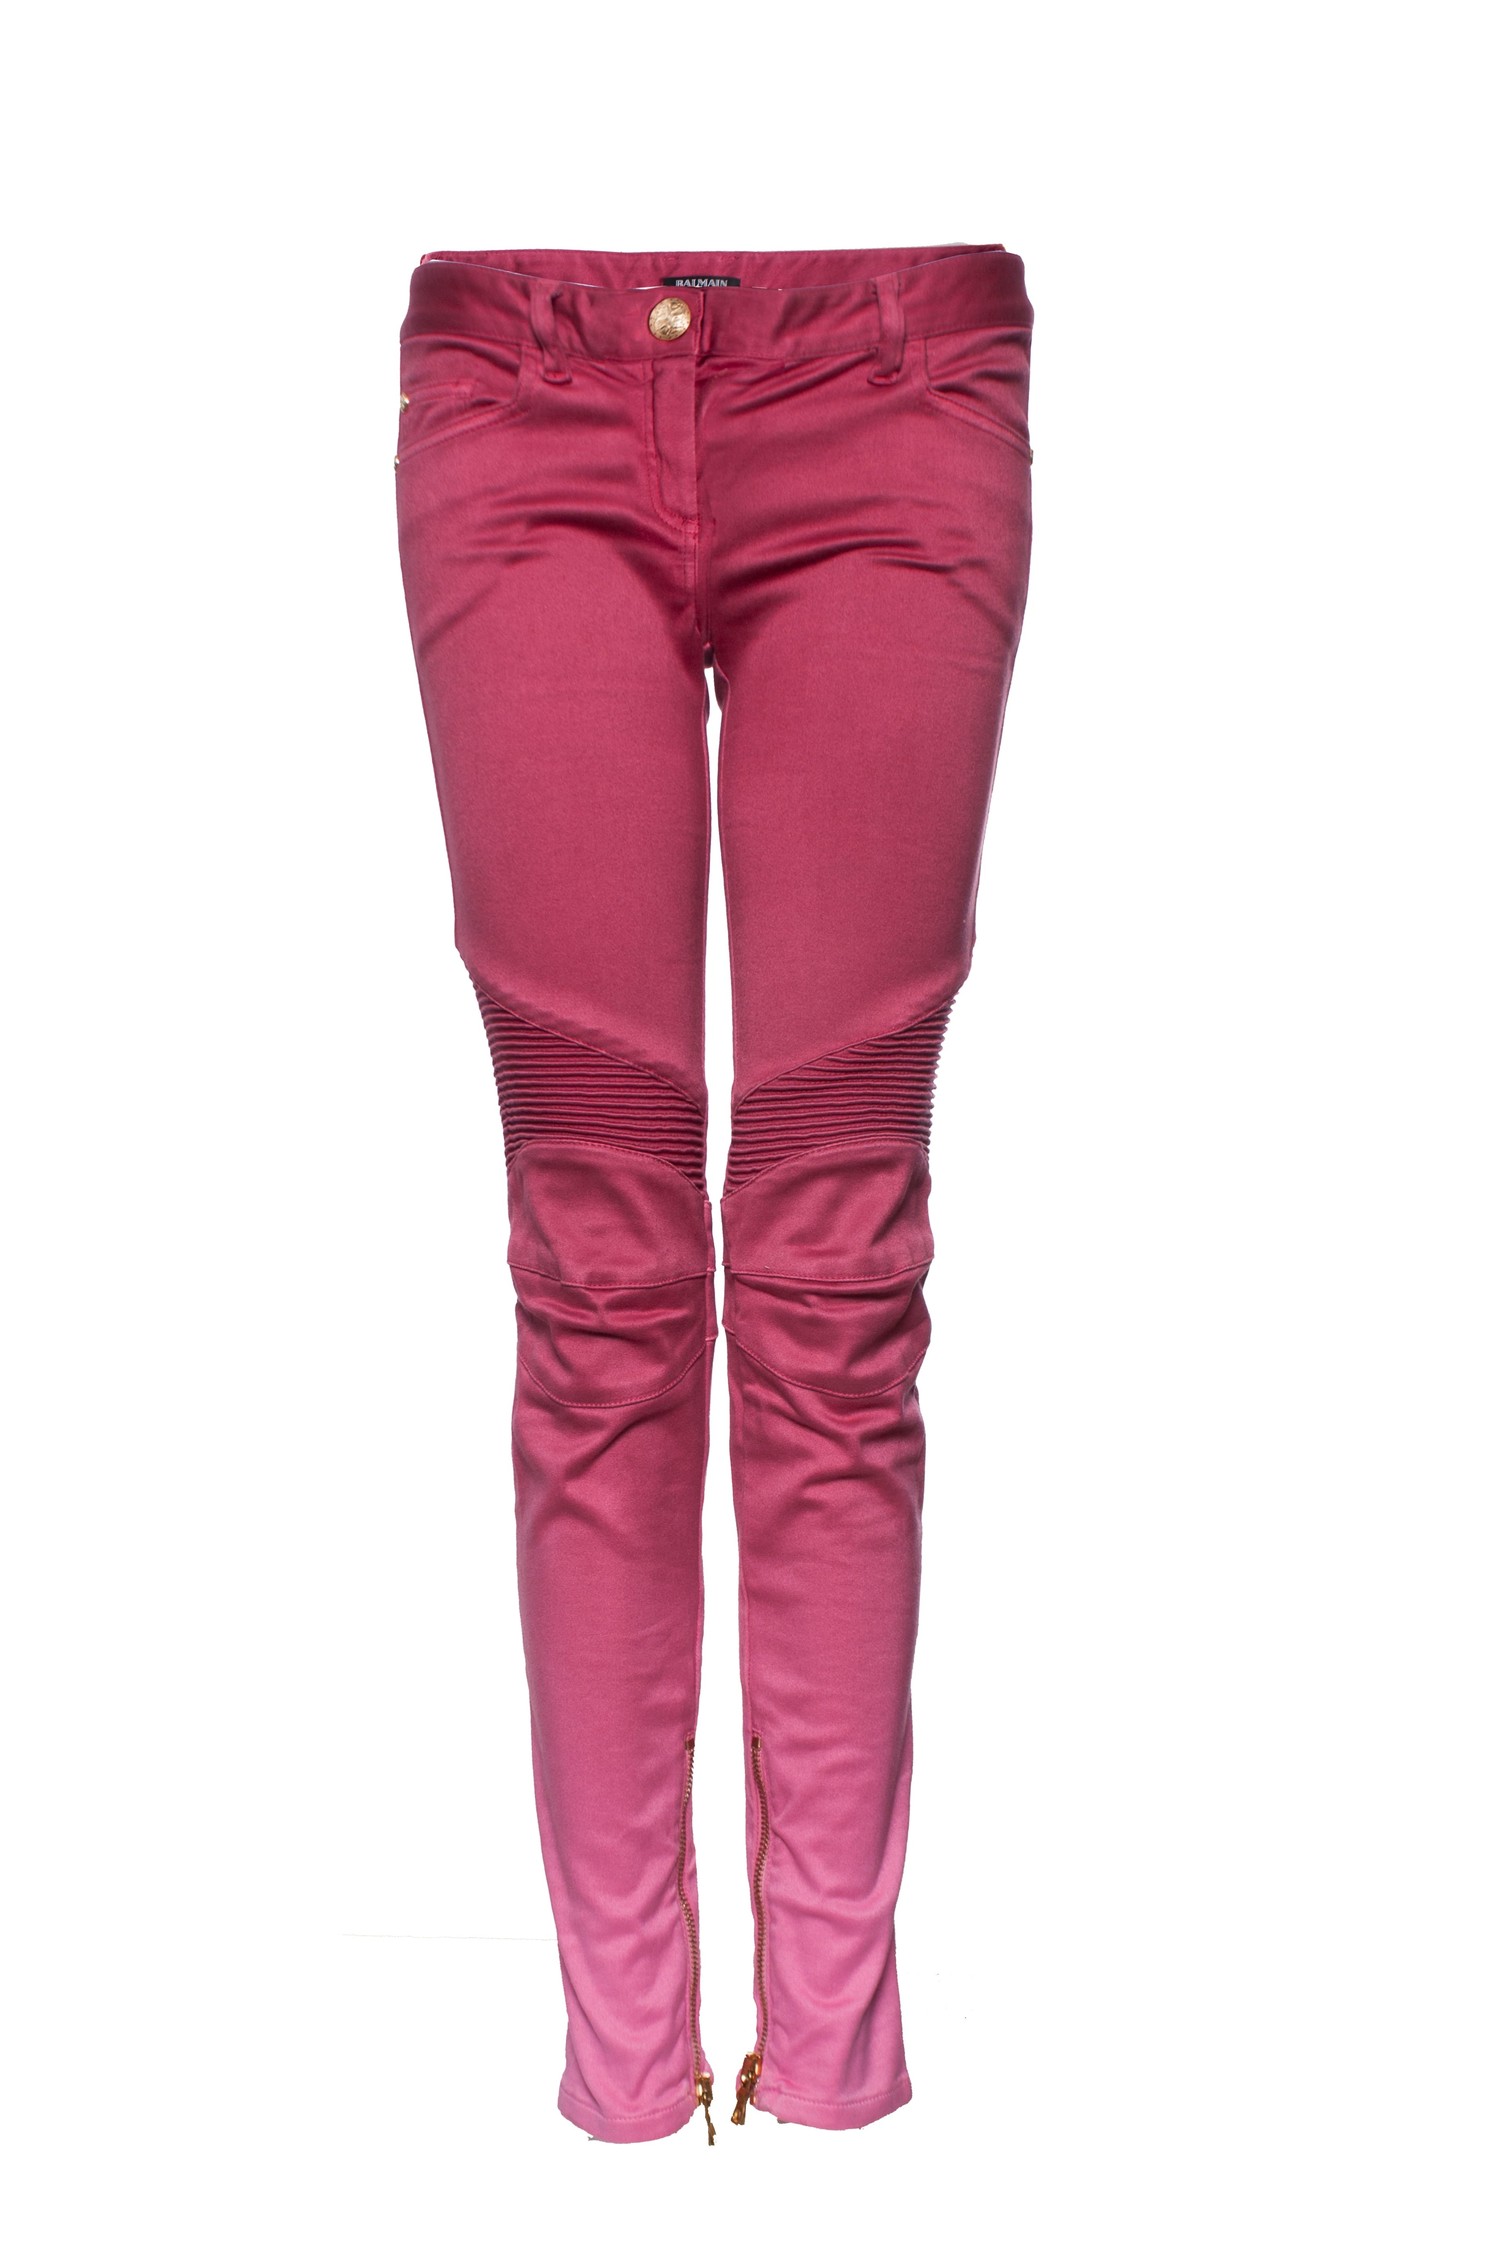 nedbryder Atlantic røgelse Balmain, pink biker jeans with color gradient. - Unique Designer Pieces